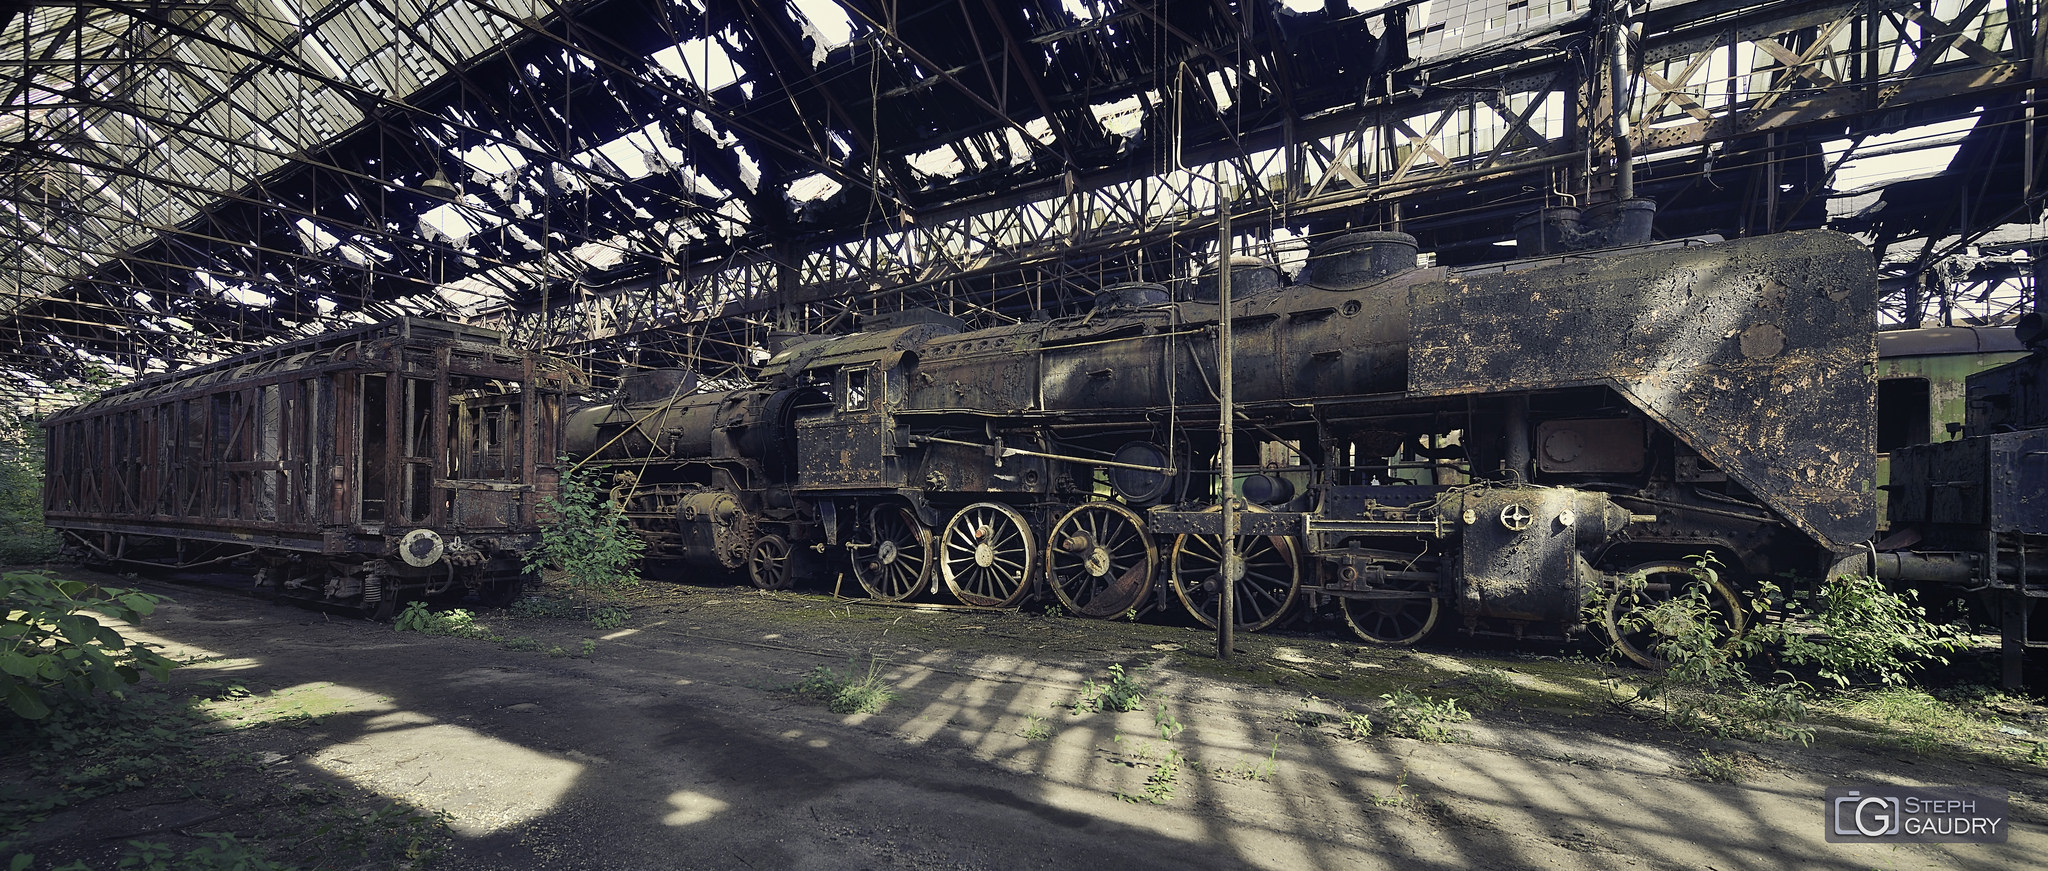 Abandoned steam train [Klicken Sie hier, um die Diashow zu starten]